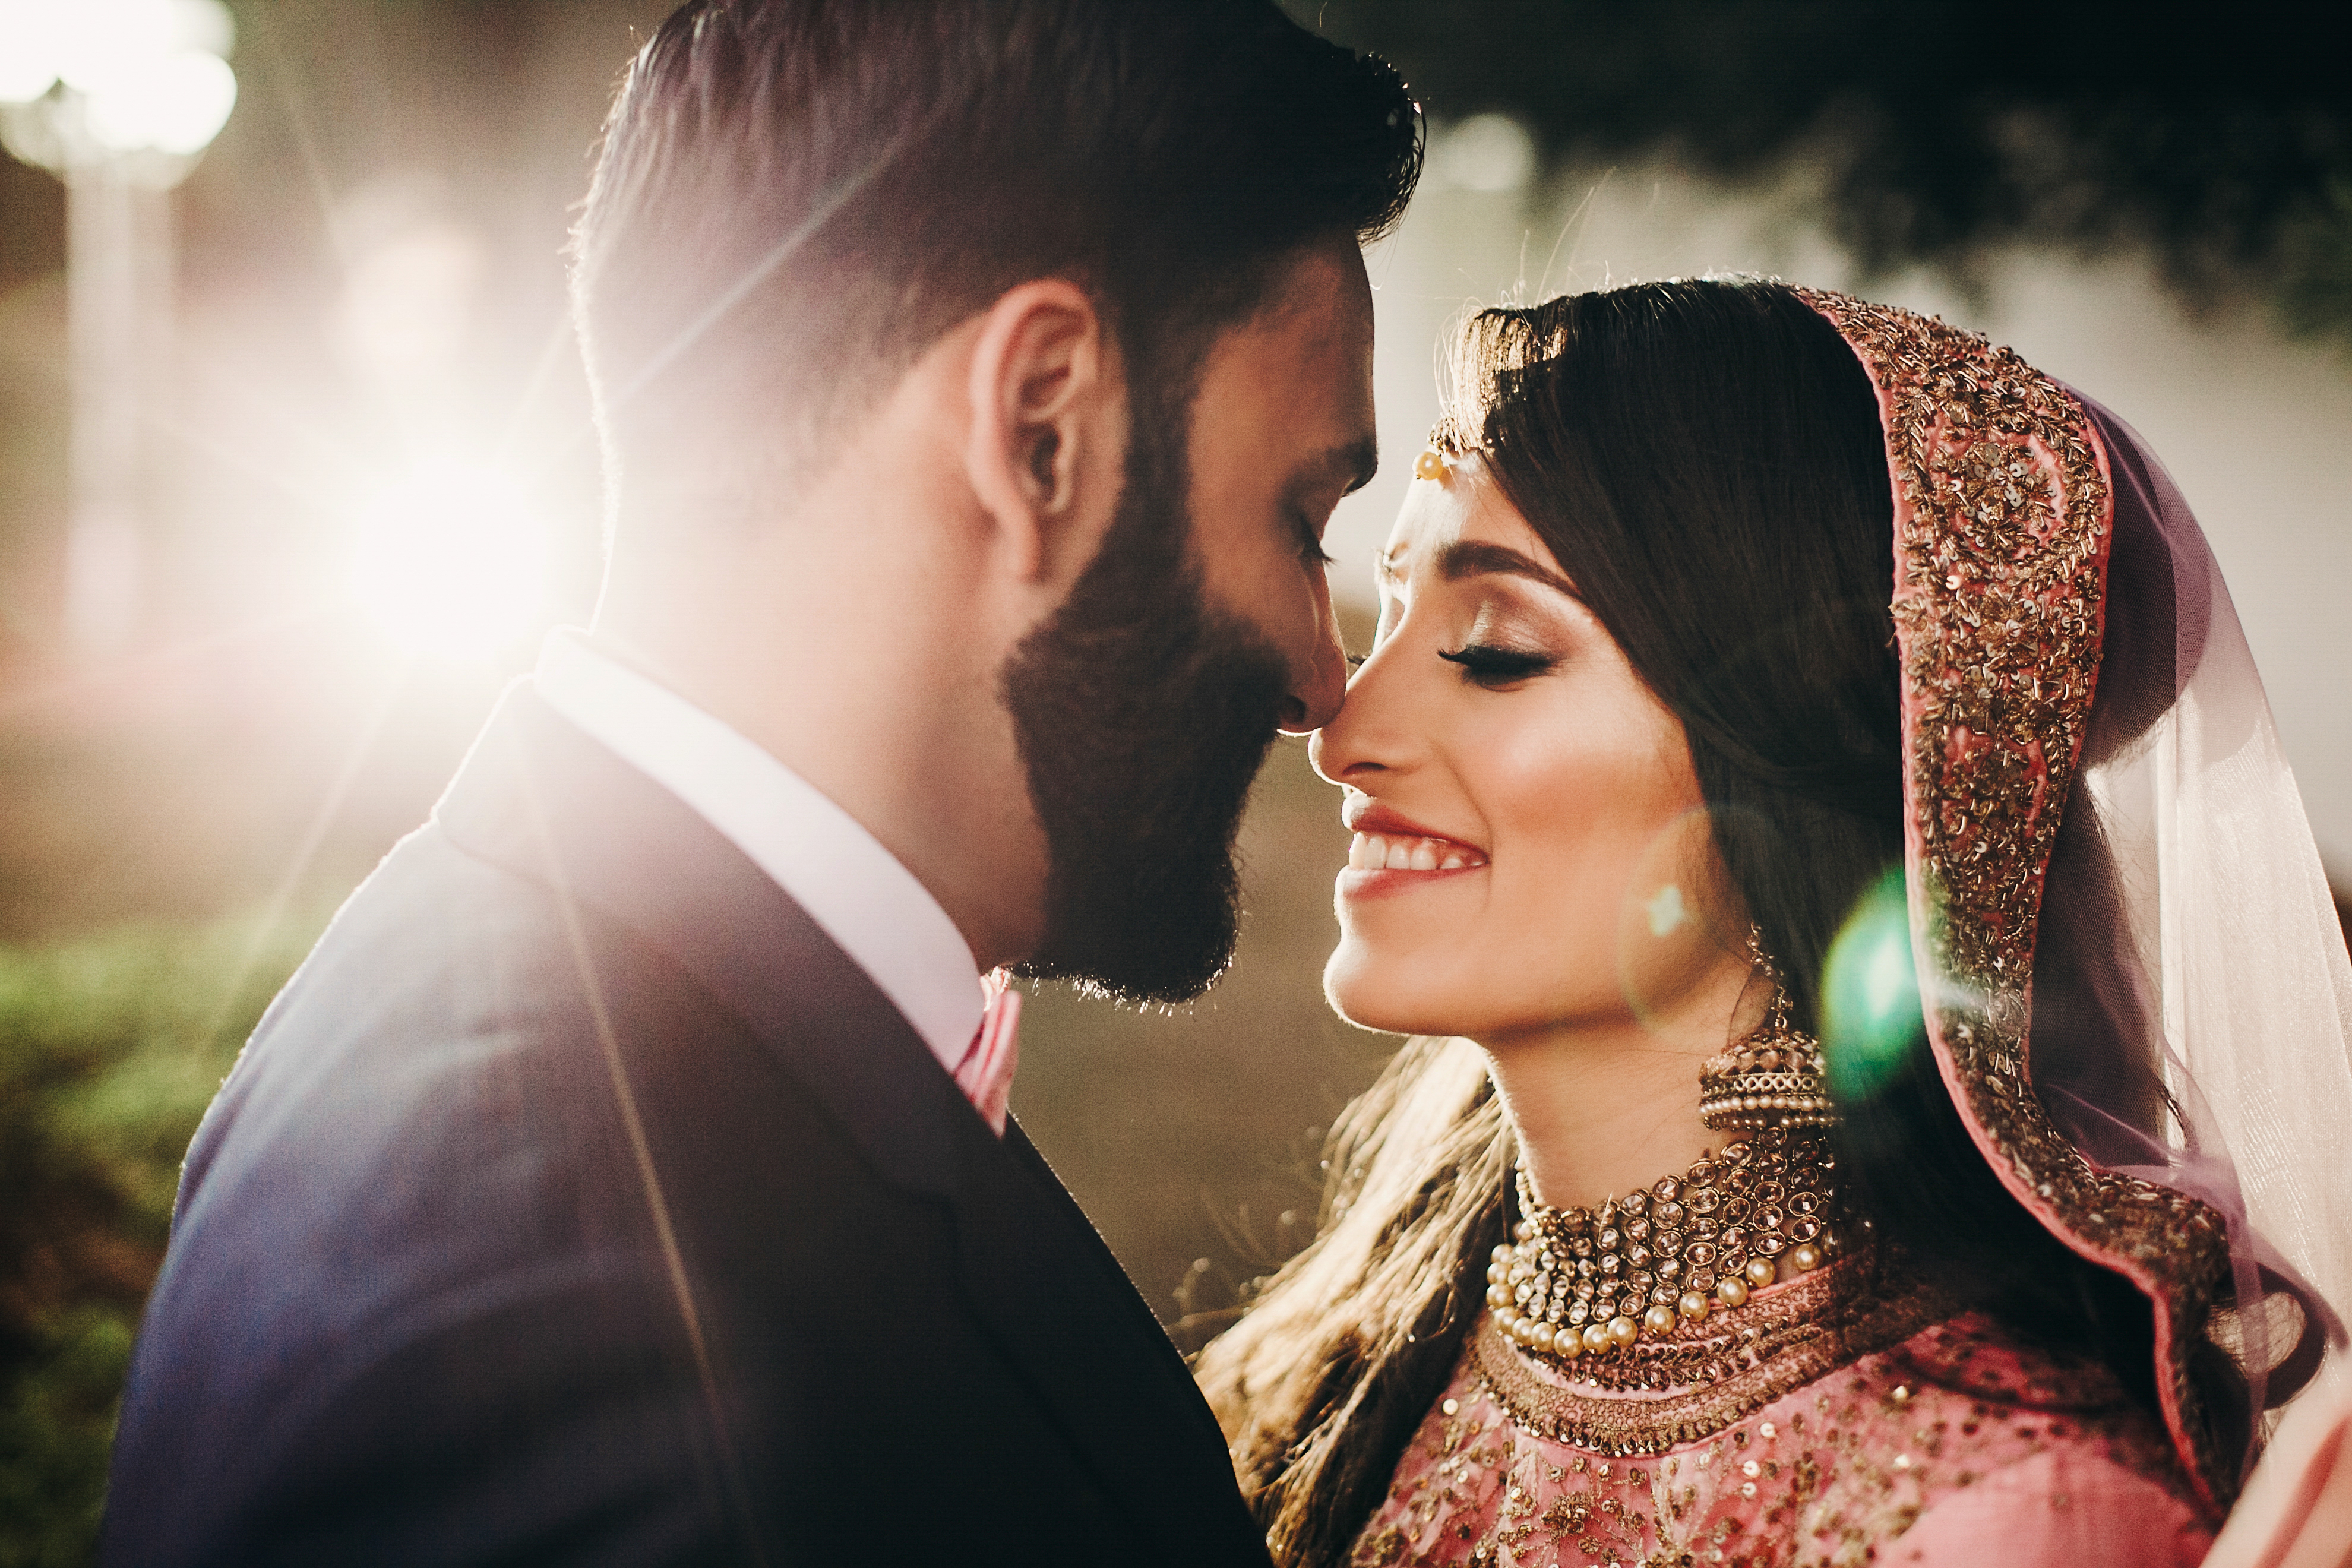 La maman était loin de se douter que son fils allait avoir un mariage indien traditionnel. | Source : Shutterstock